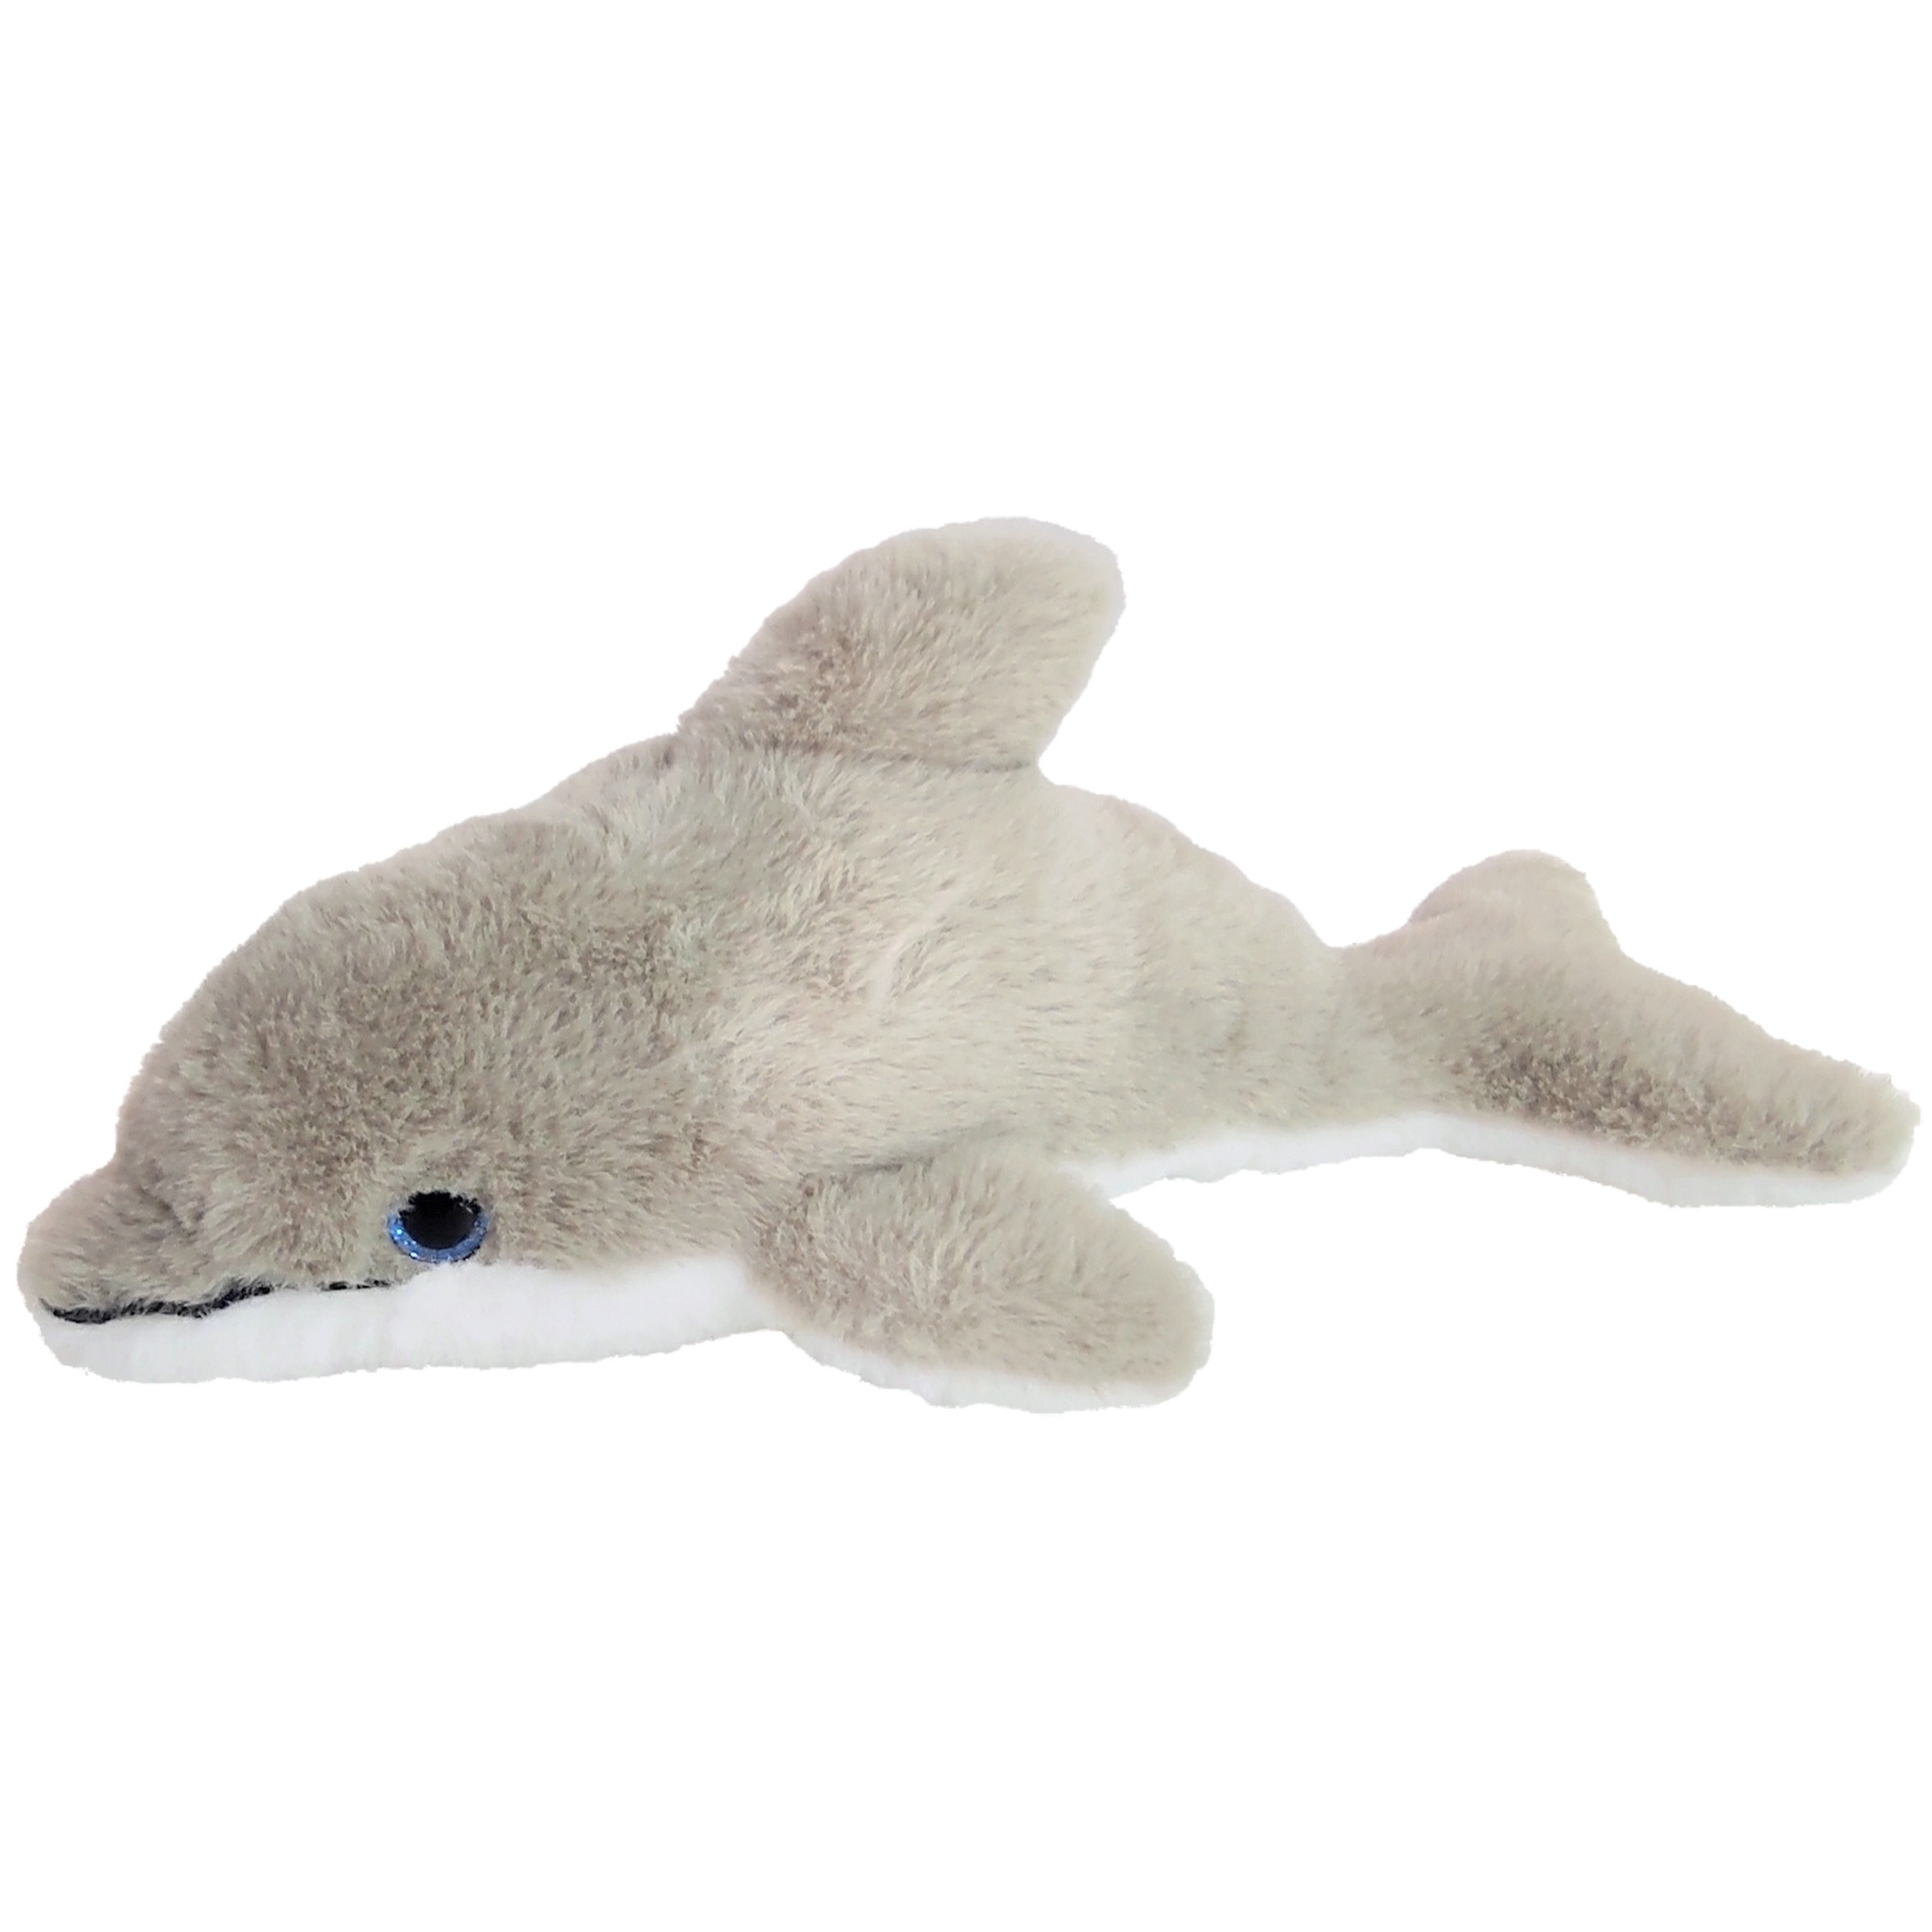 Inware pluche dolfijn knuffeldier - grijs/wit - zwemmend - 26 cm -